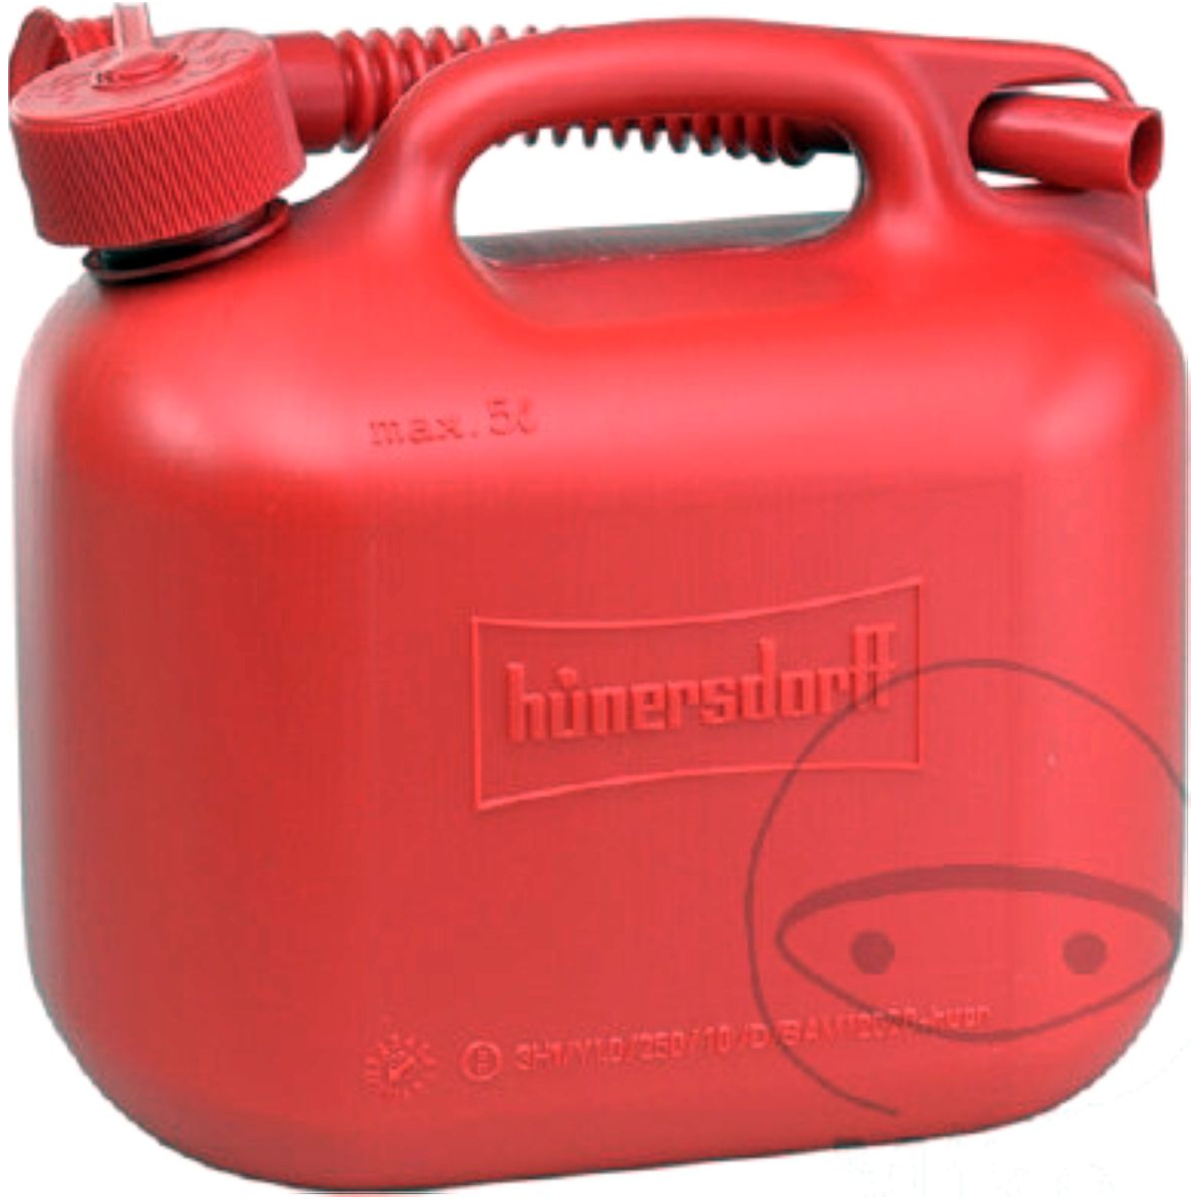 Kraftstoffkanister rot 5 liter